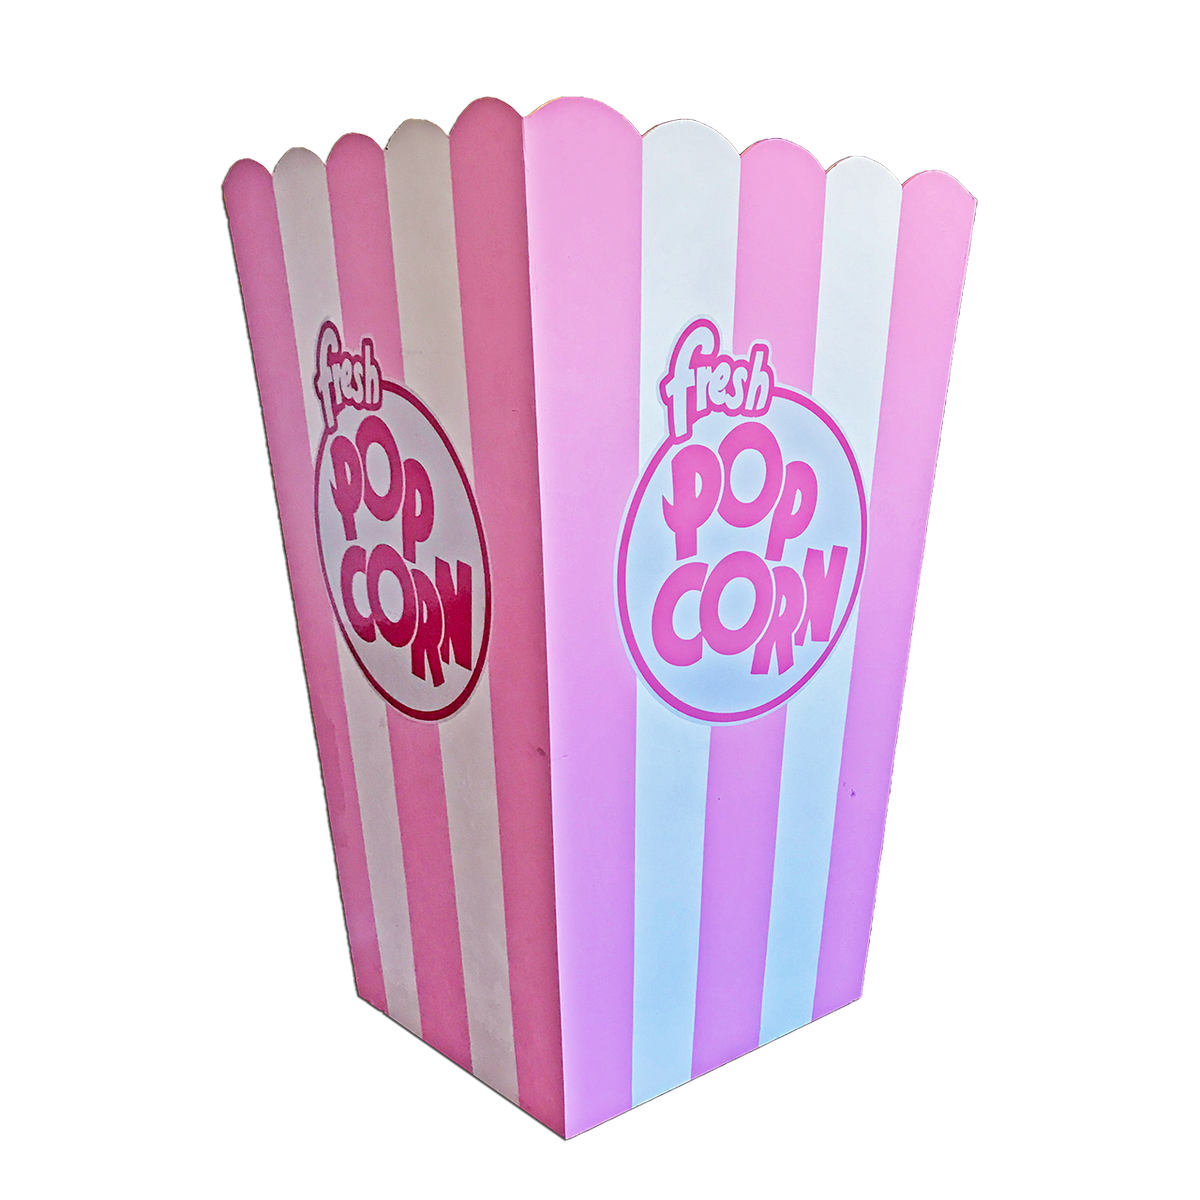 Party Size Popcorn - 1kg - Papa Jack Popcorn